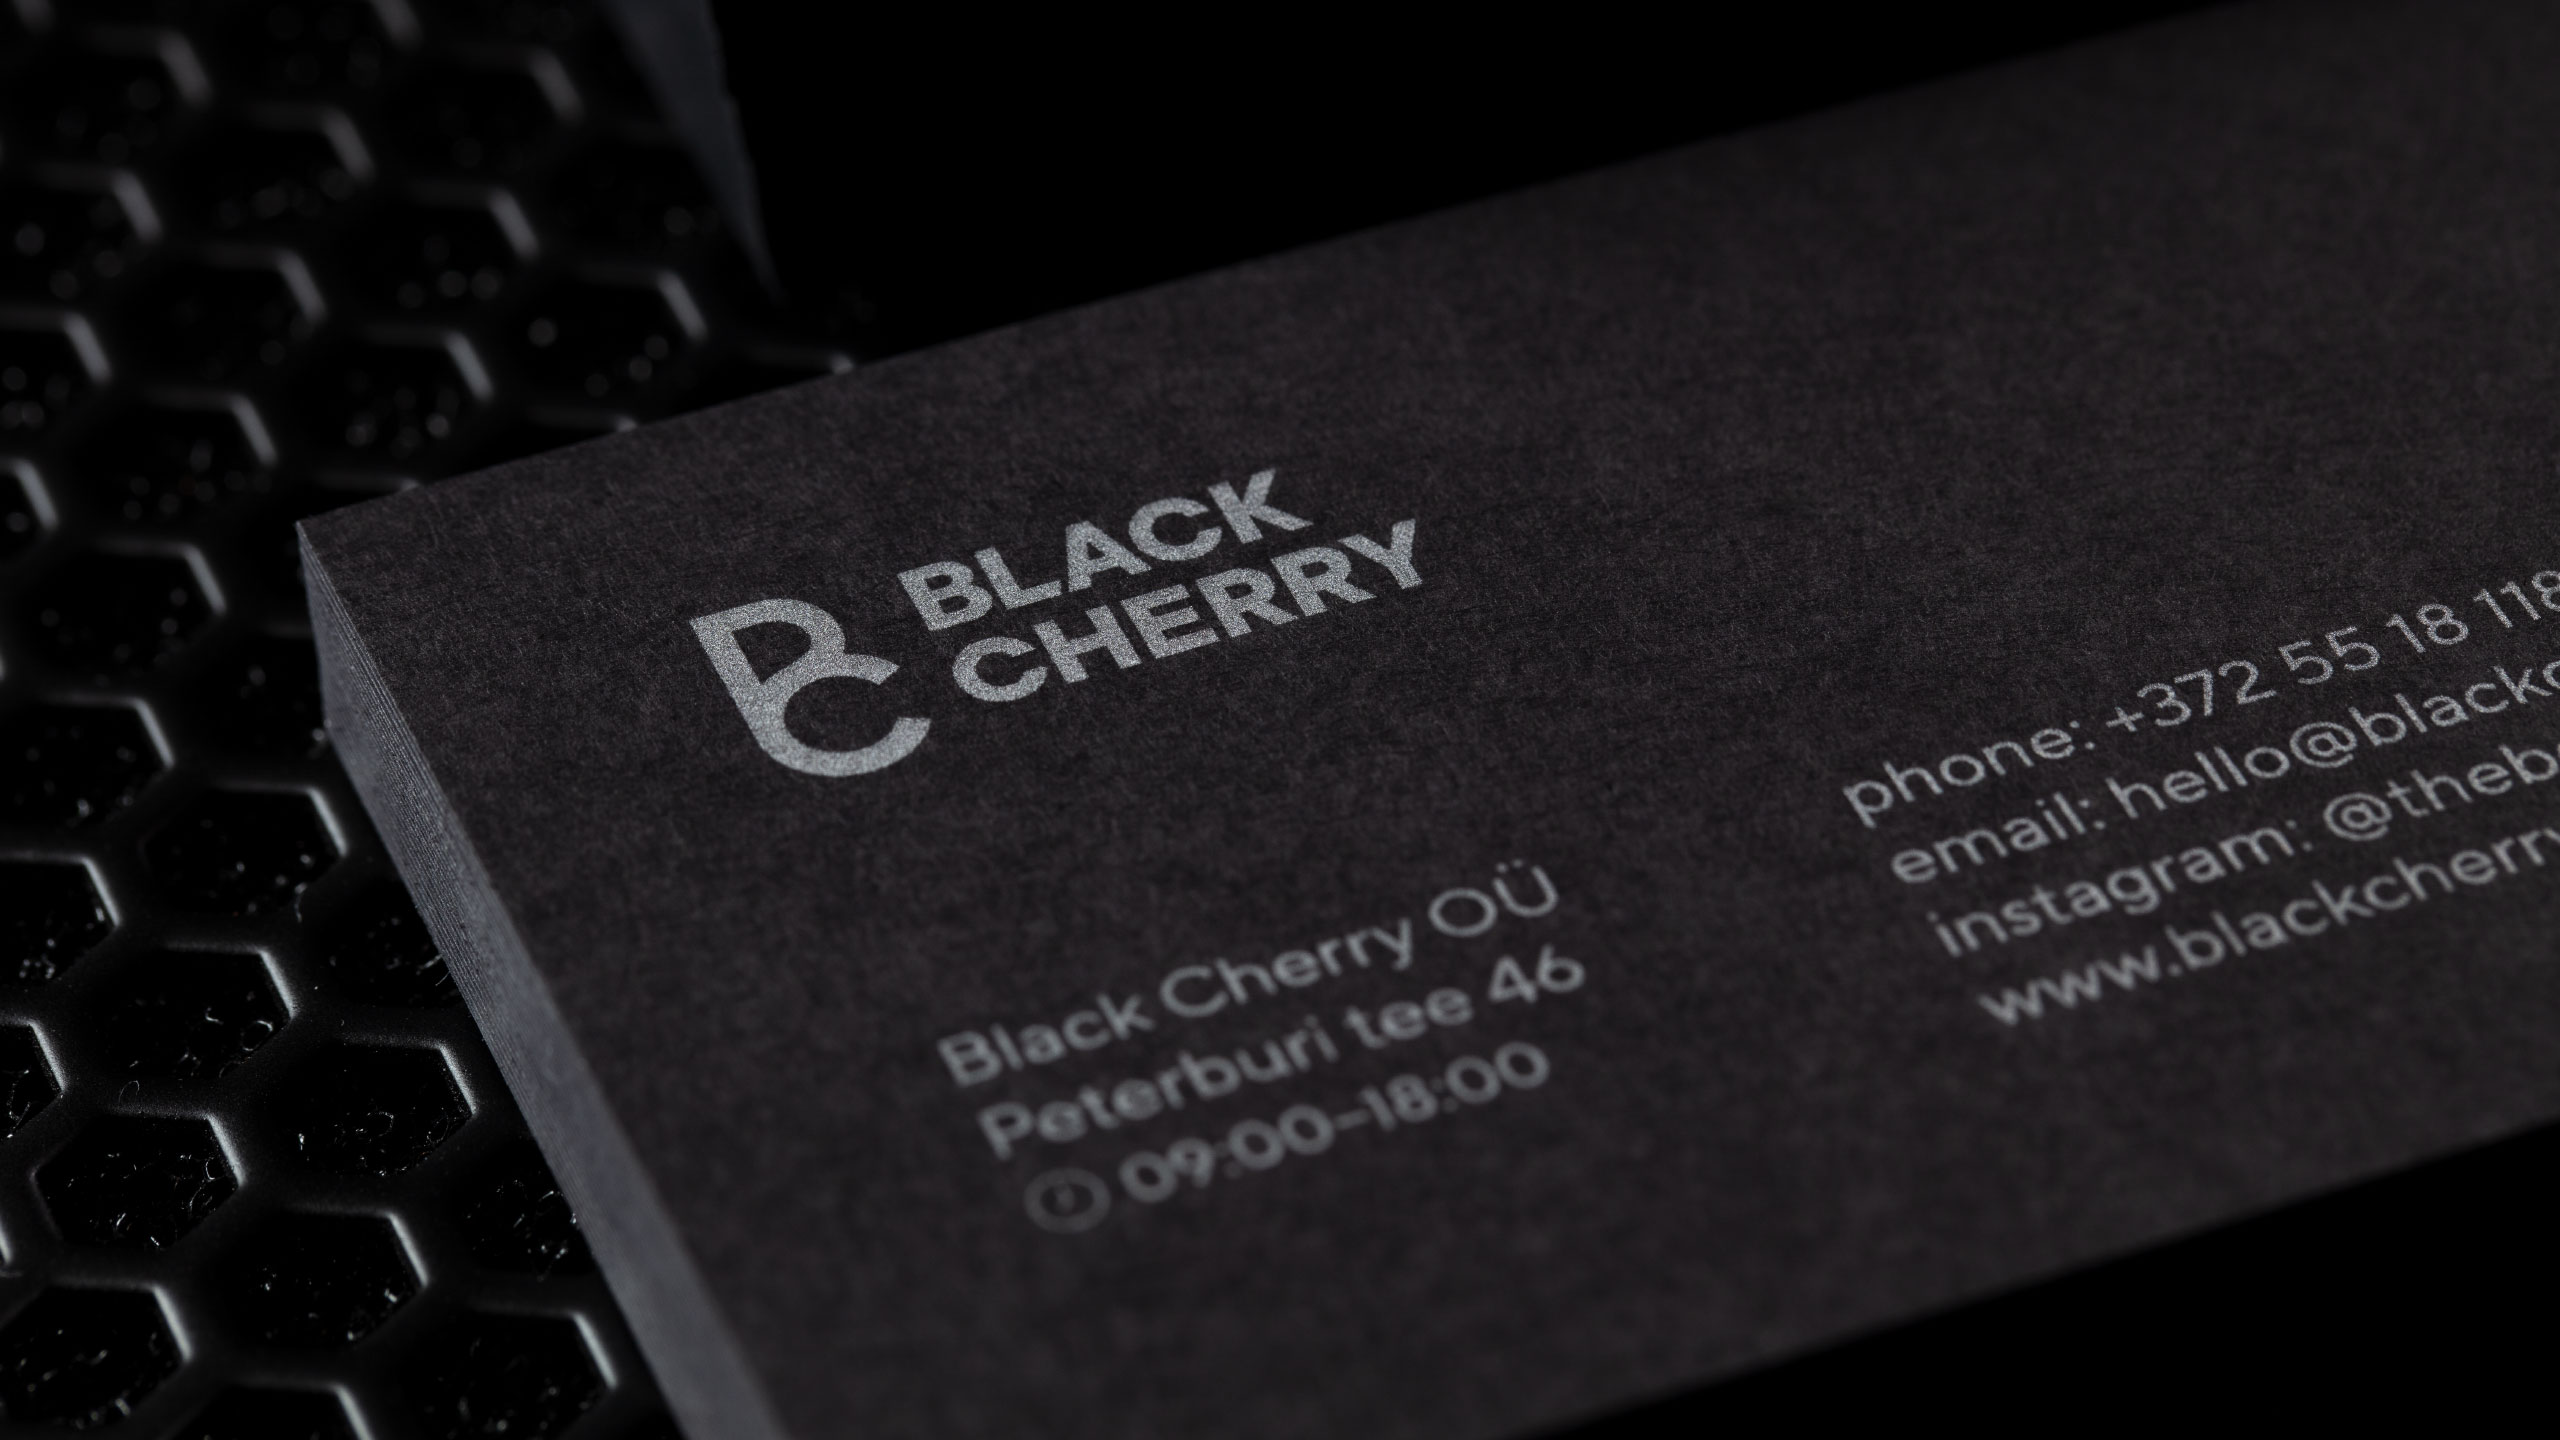 Black Cherry logotype